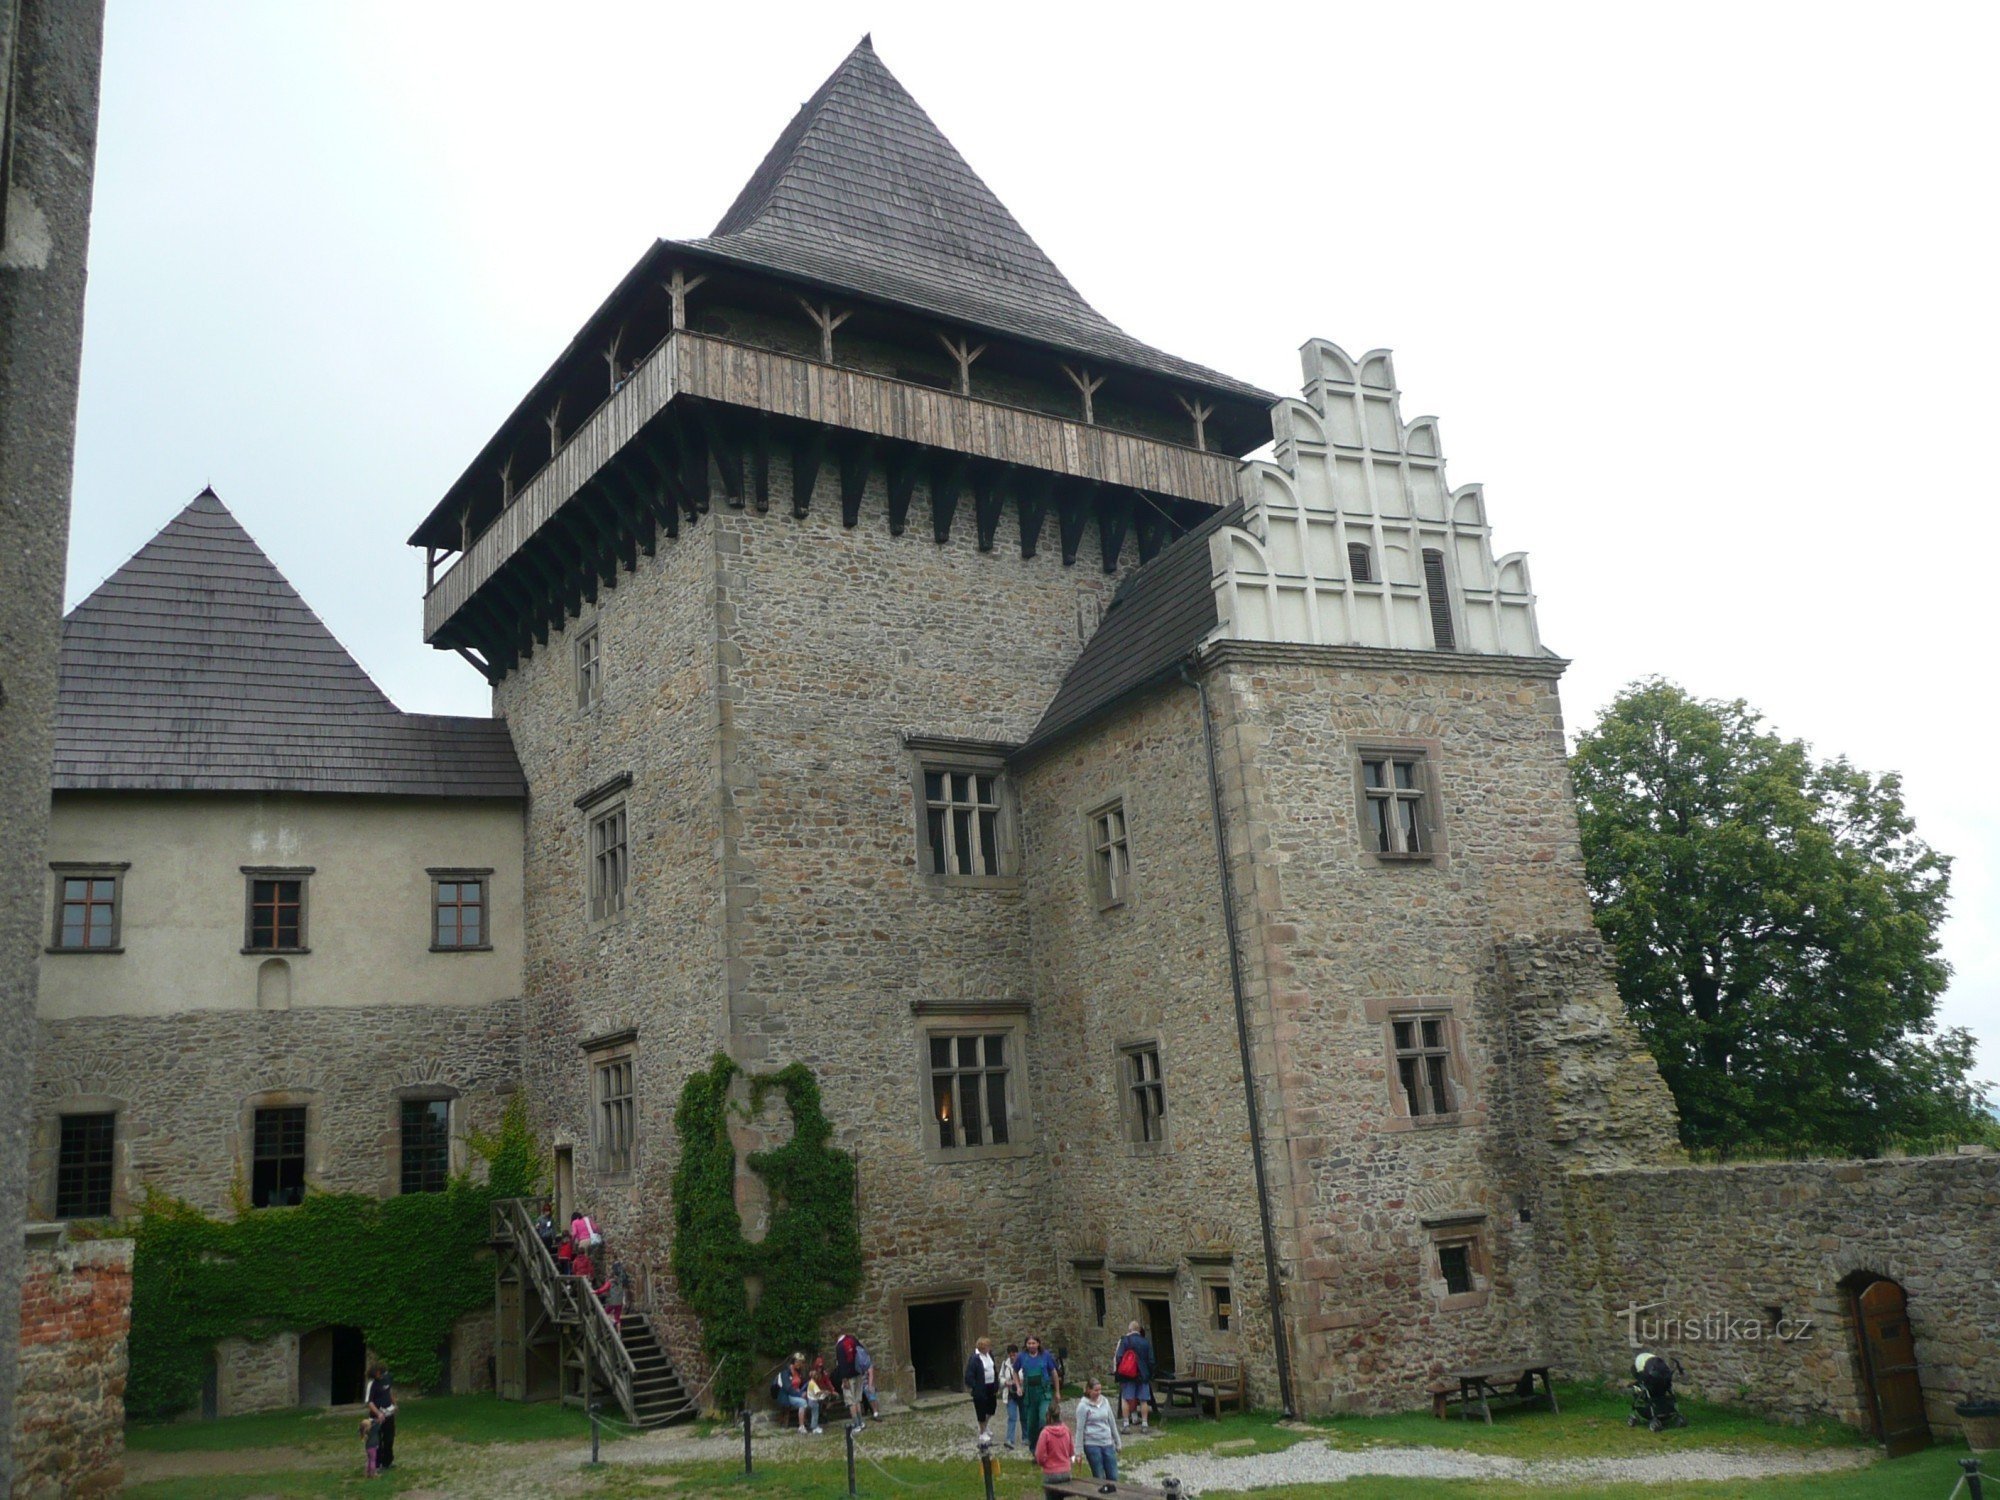 Castelul Lipnice nad Sázavou